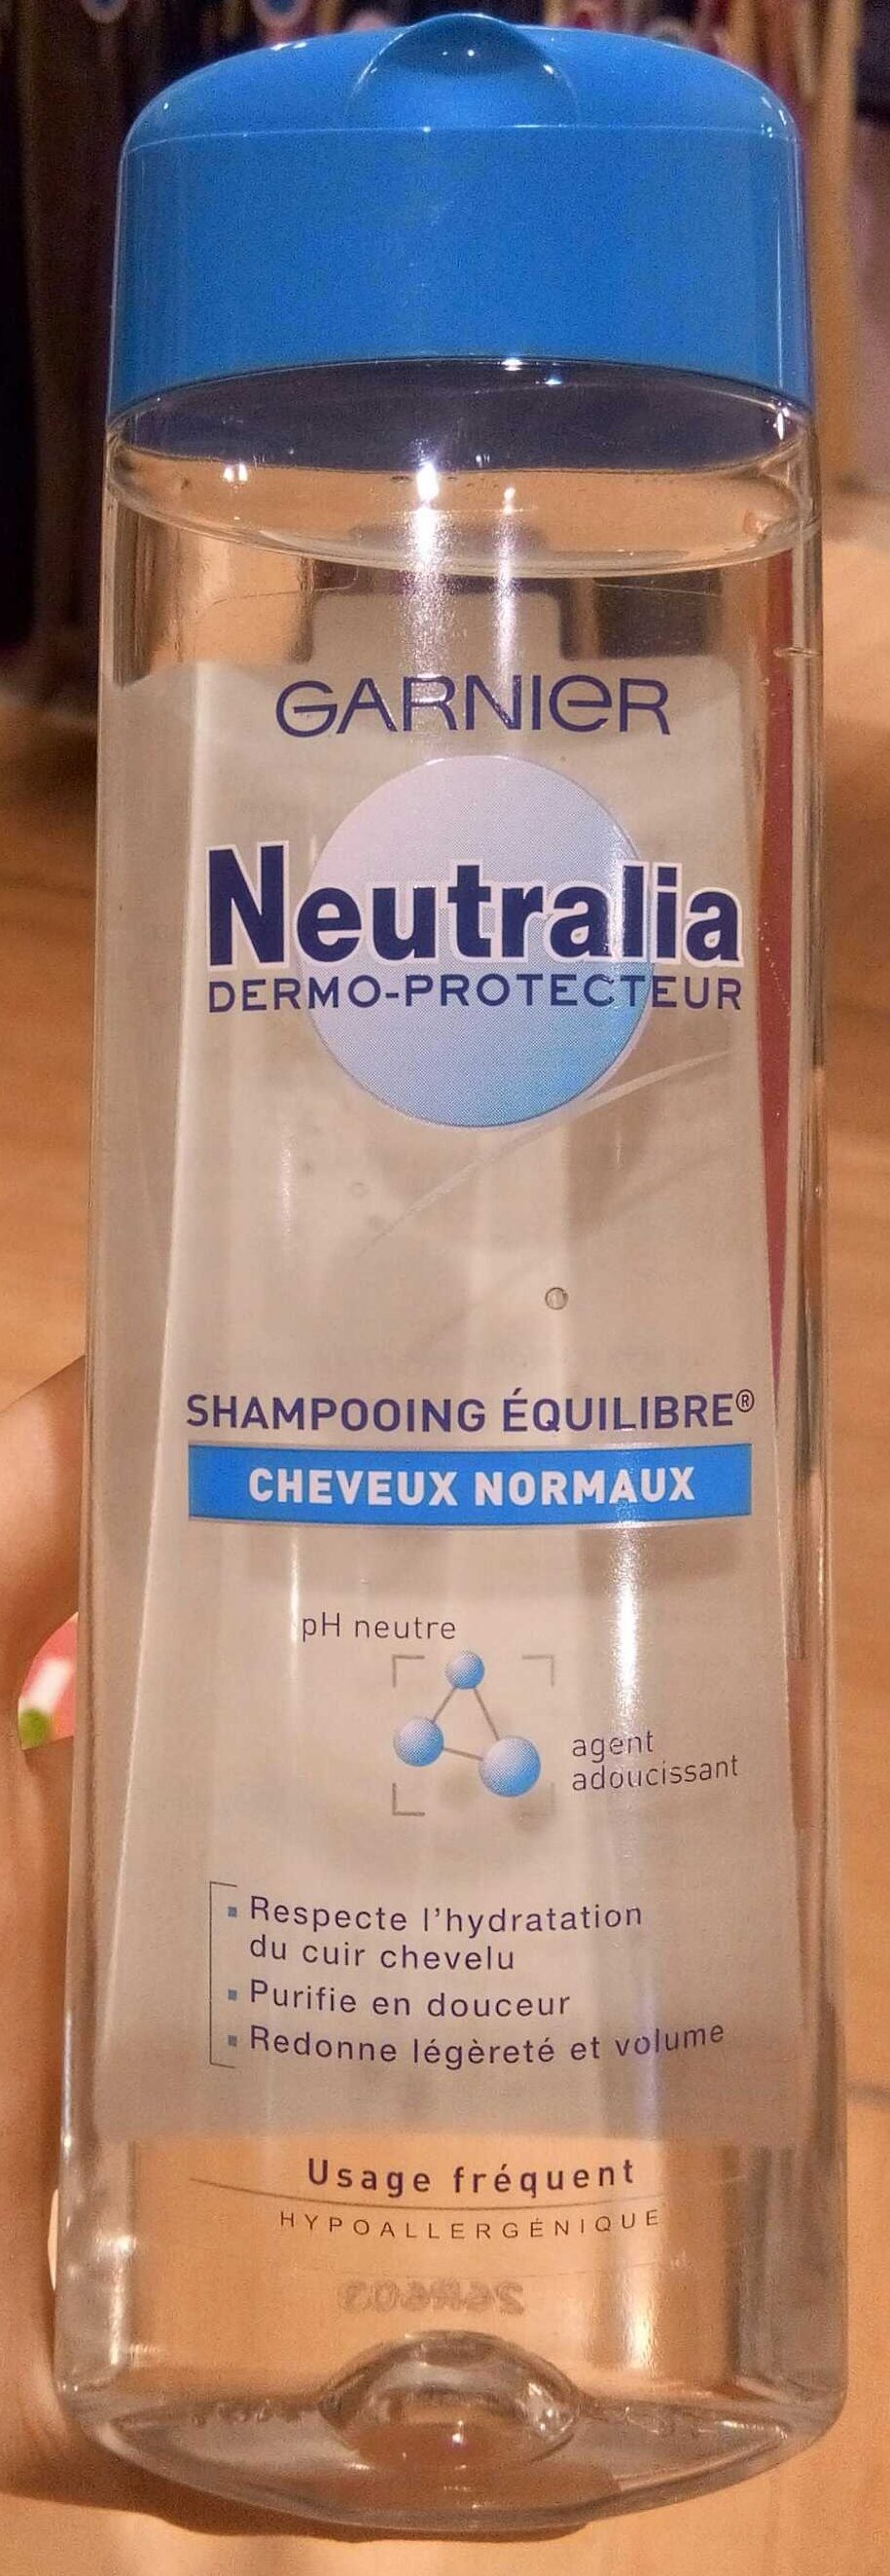 Neutralia shampooing équilibre - Produto - fr